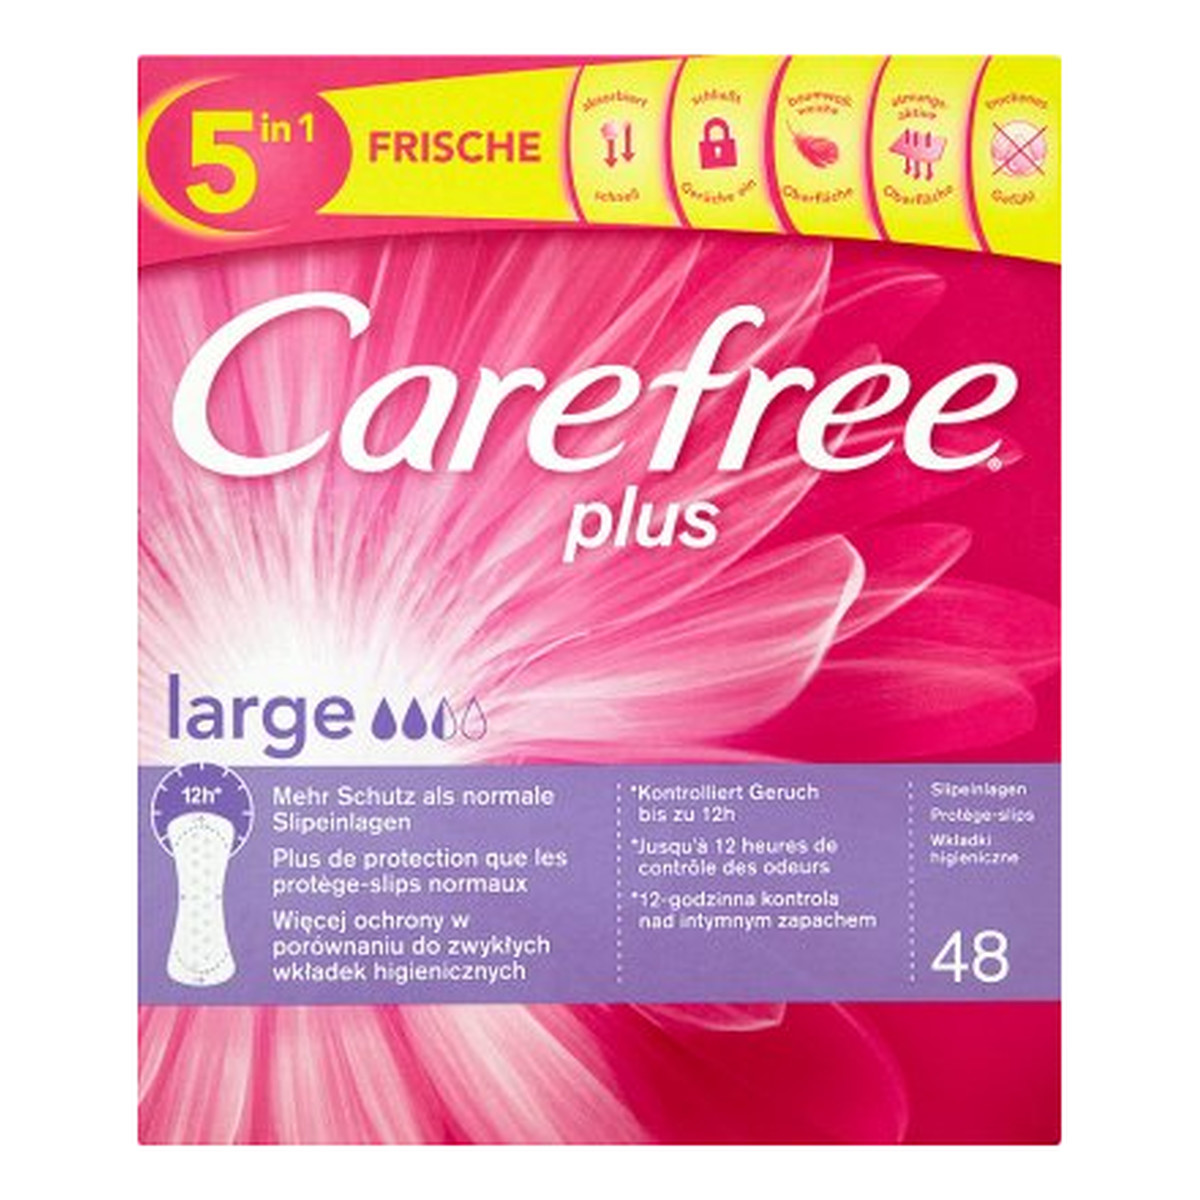 Carefree Plus Large Wkładki Higieniczne 48szt.